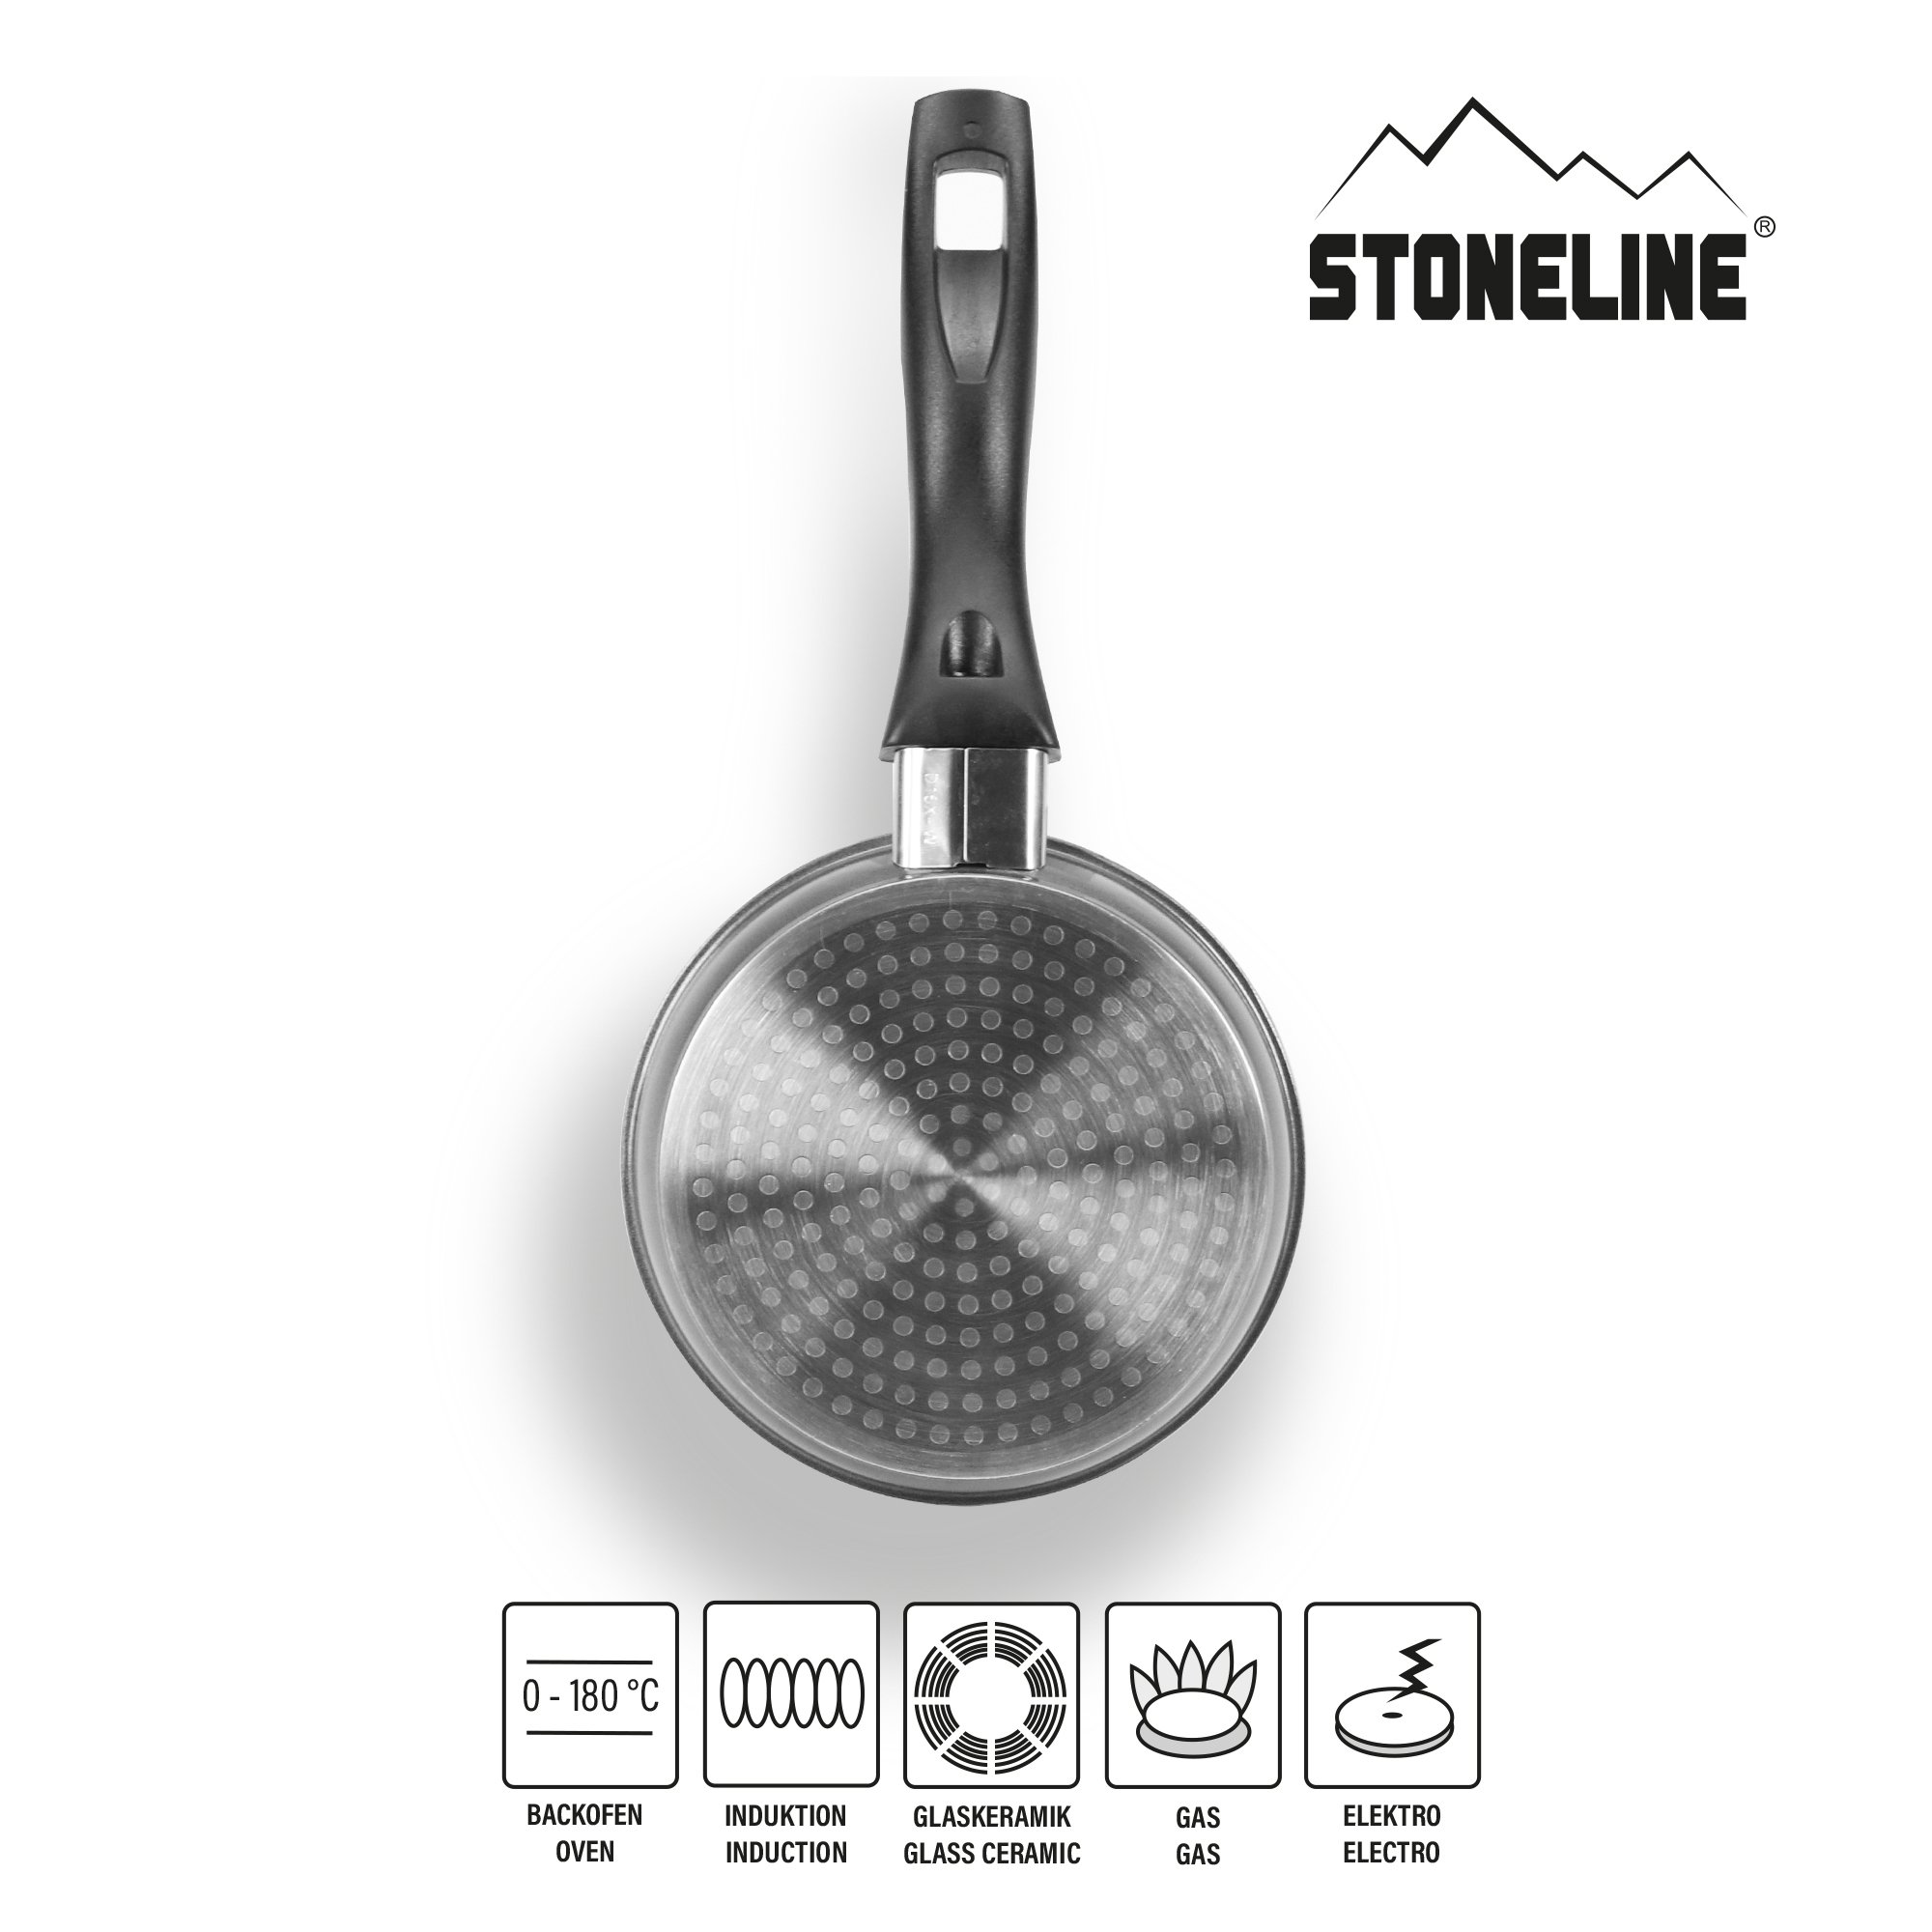 STONELINE® sartén 14 cm, sartén antiadherente para tortillas, apta para horno e inducción